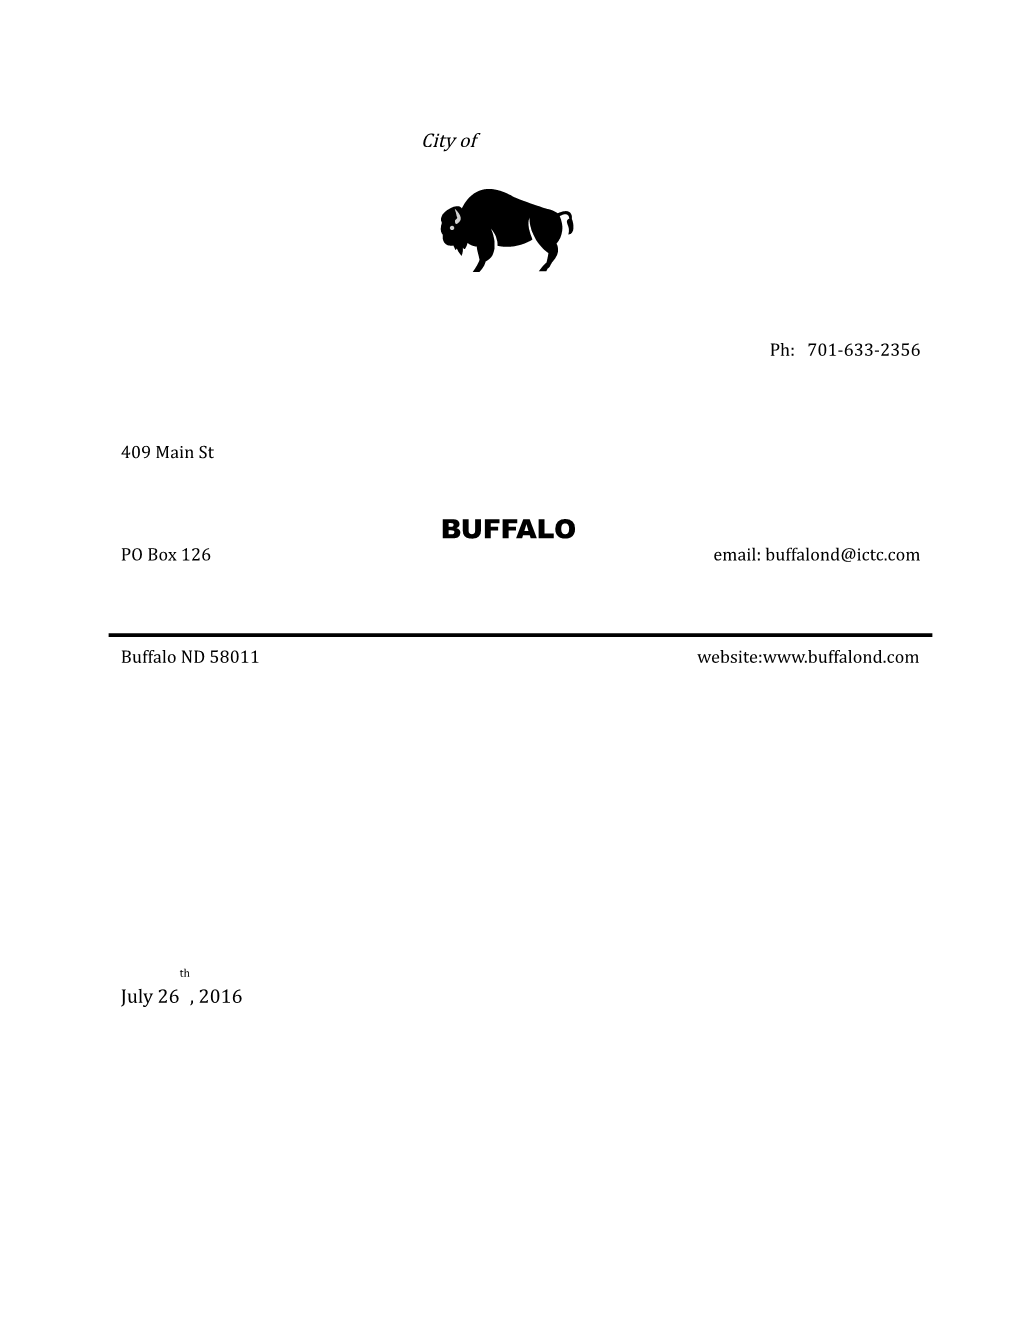 Dear Friends of Buffalo